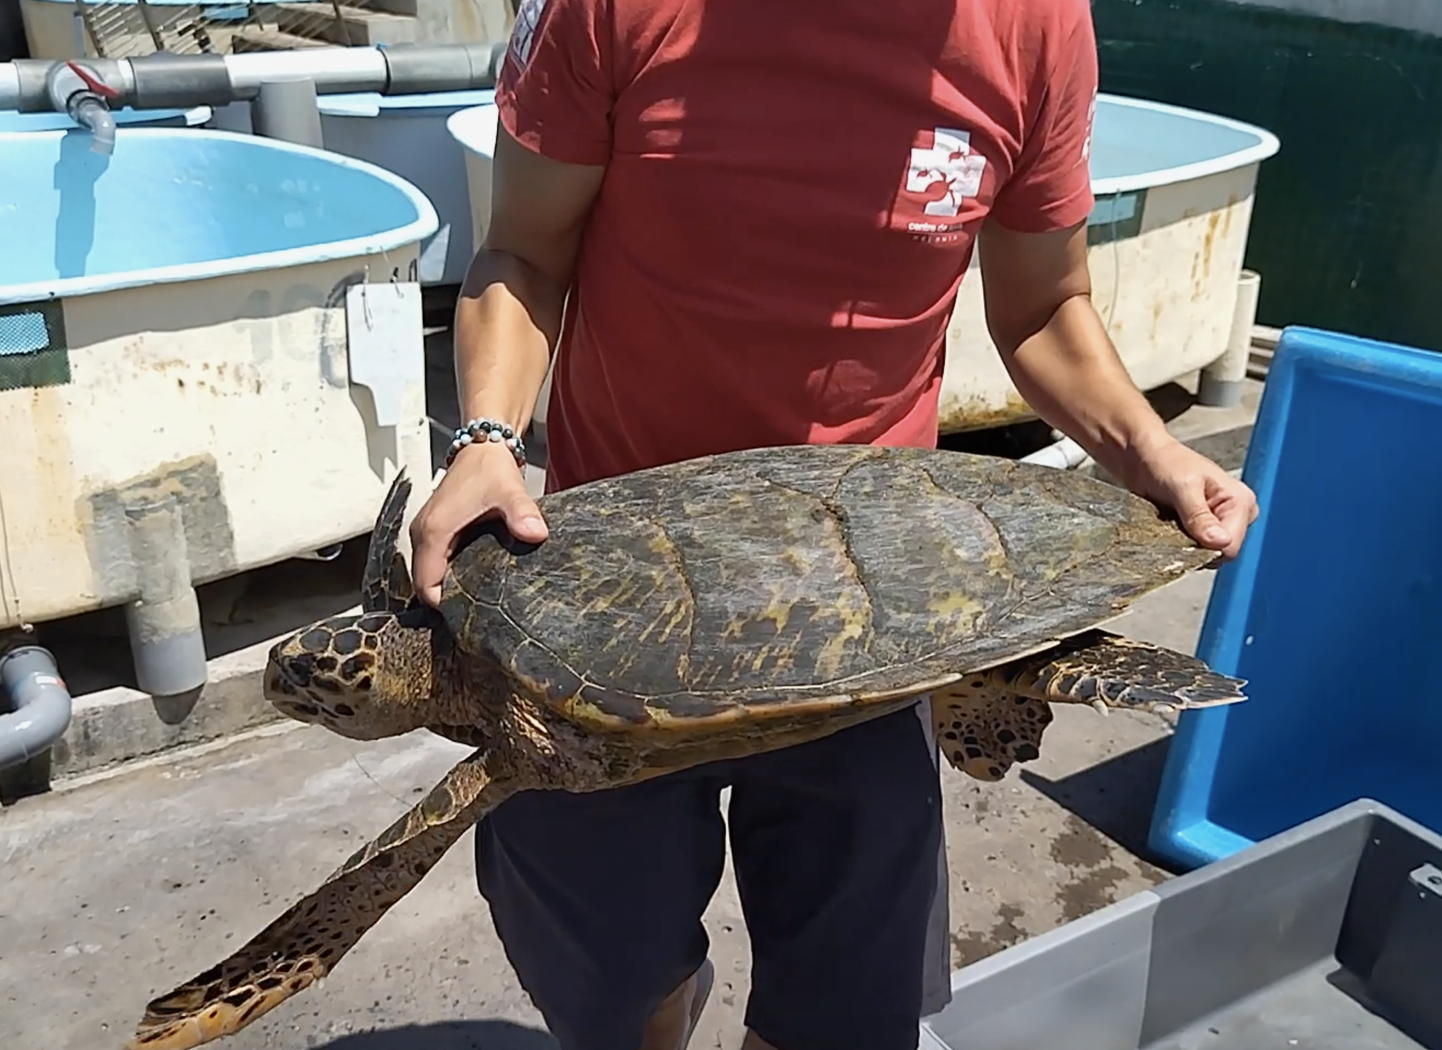 Une nouvelle tortue retrouvée hameçonnée, cette fois-ci elle est encore vivante